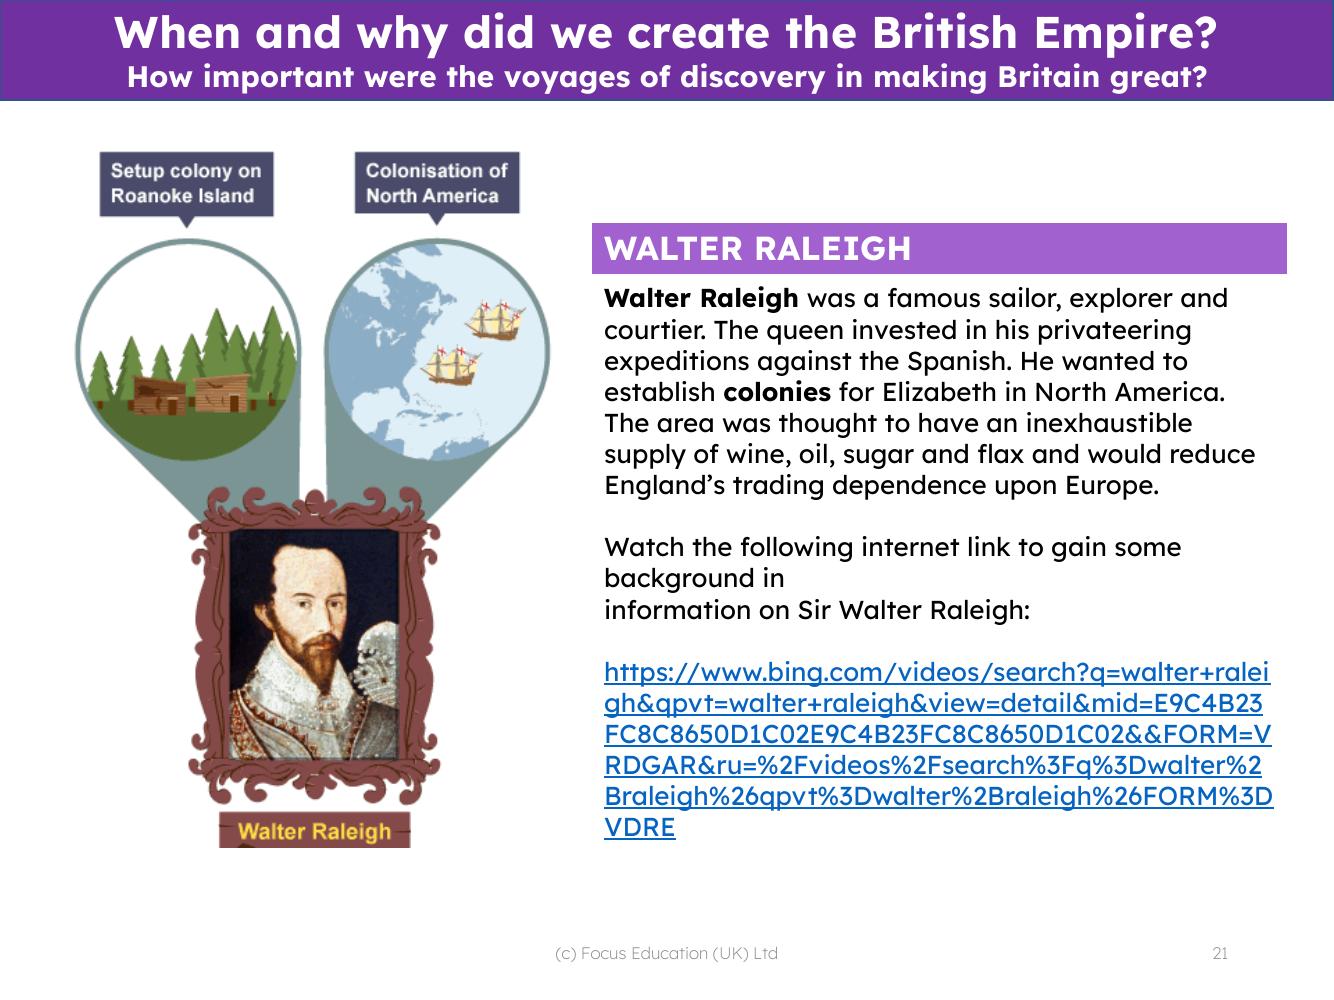 Walter Raleigh - Info sheet